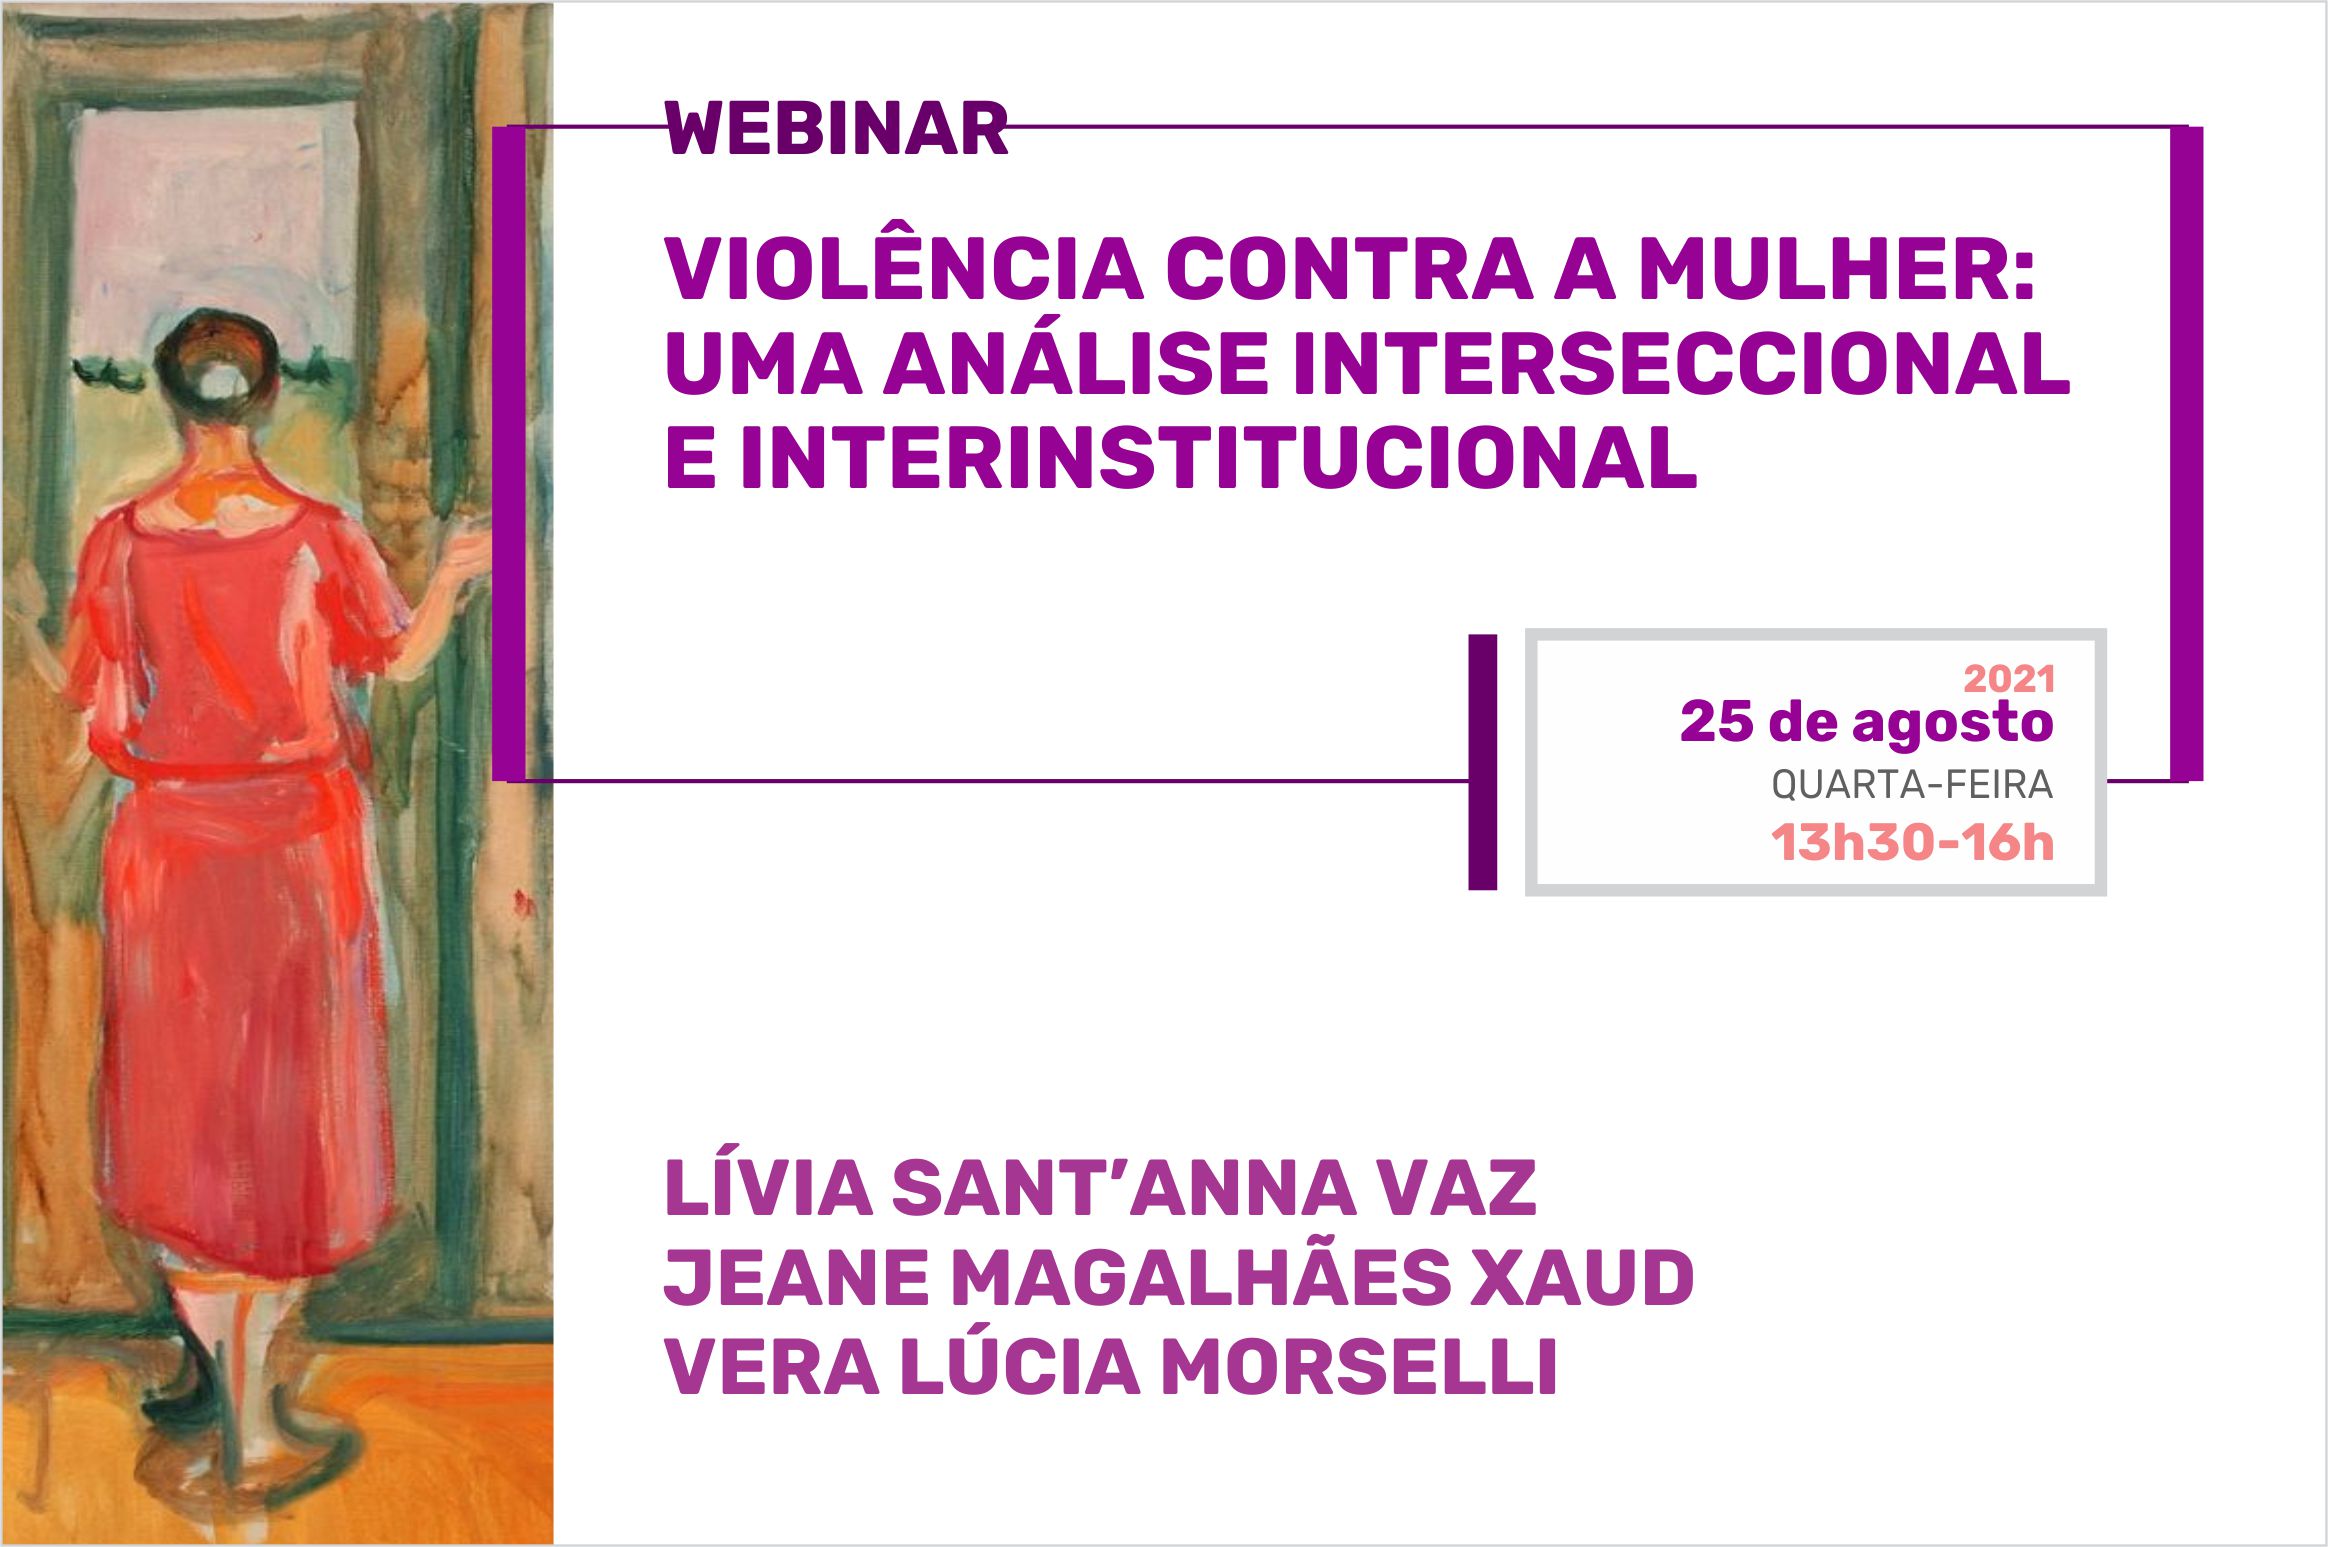 Cartaz do Webnar "Violência contra a mulher: uma análise interseccional e interinstitucional”